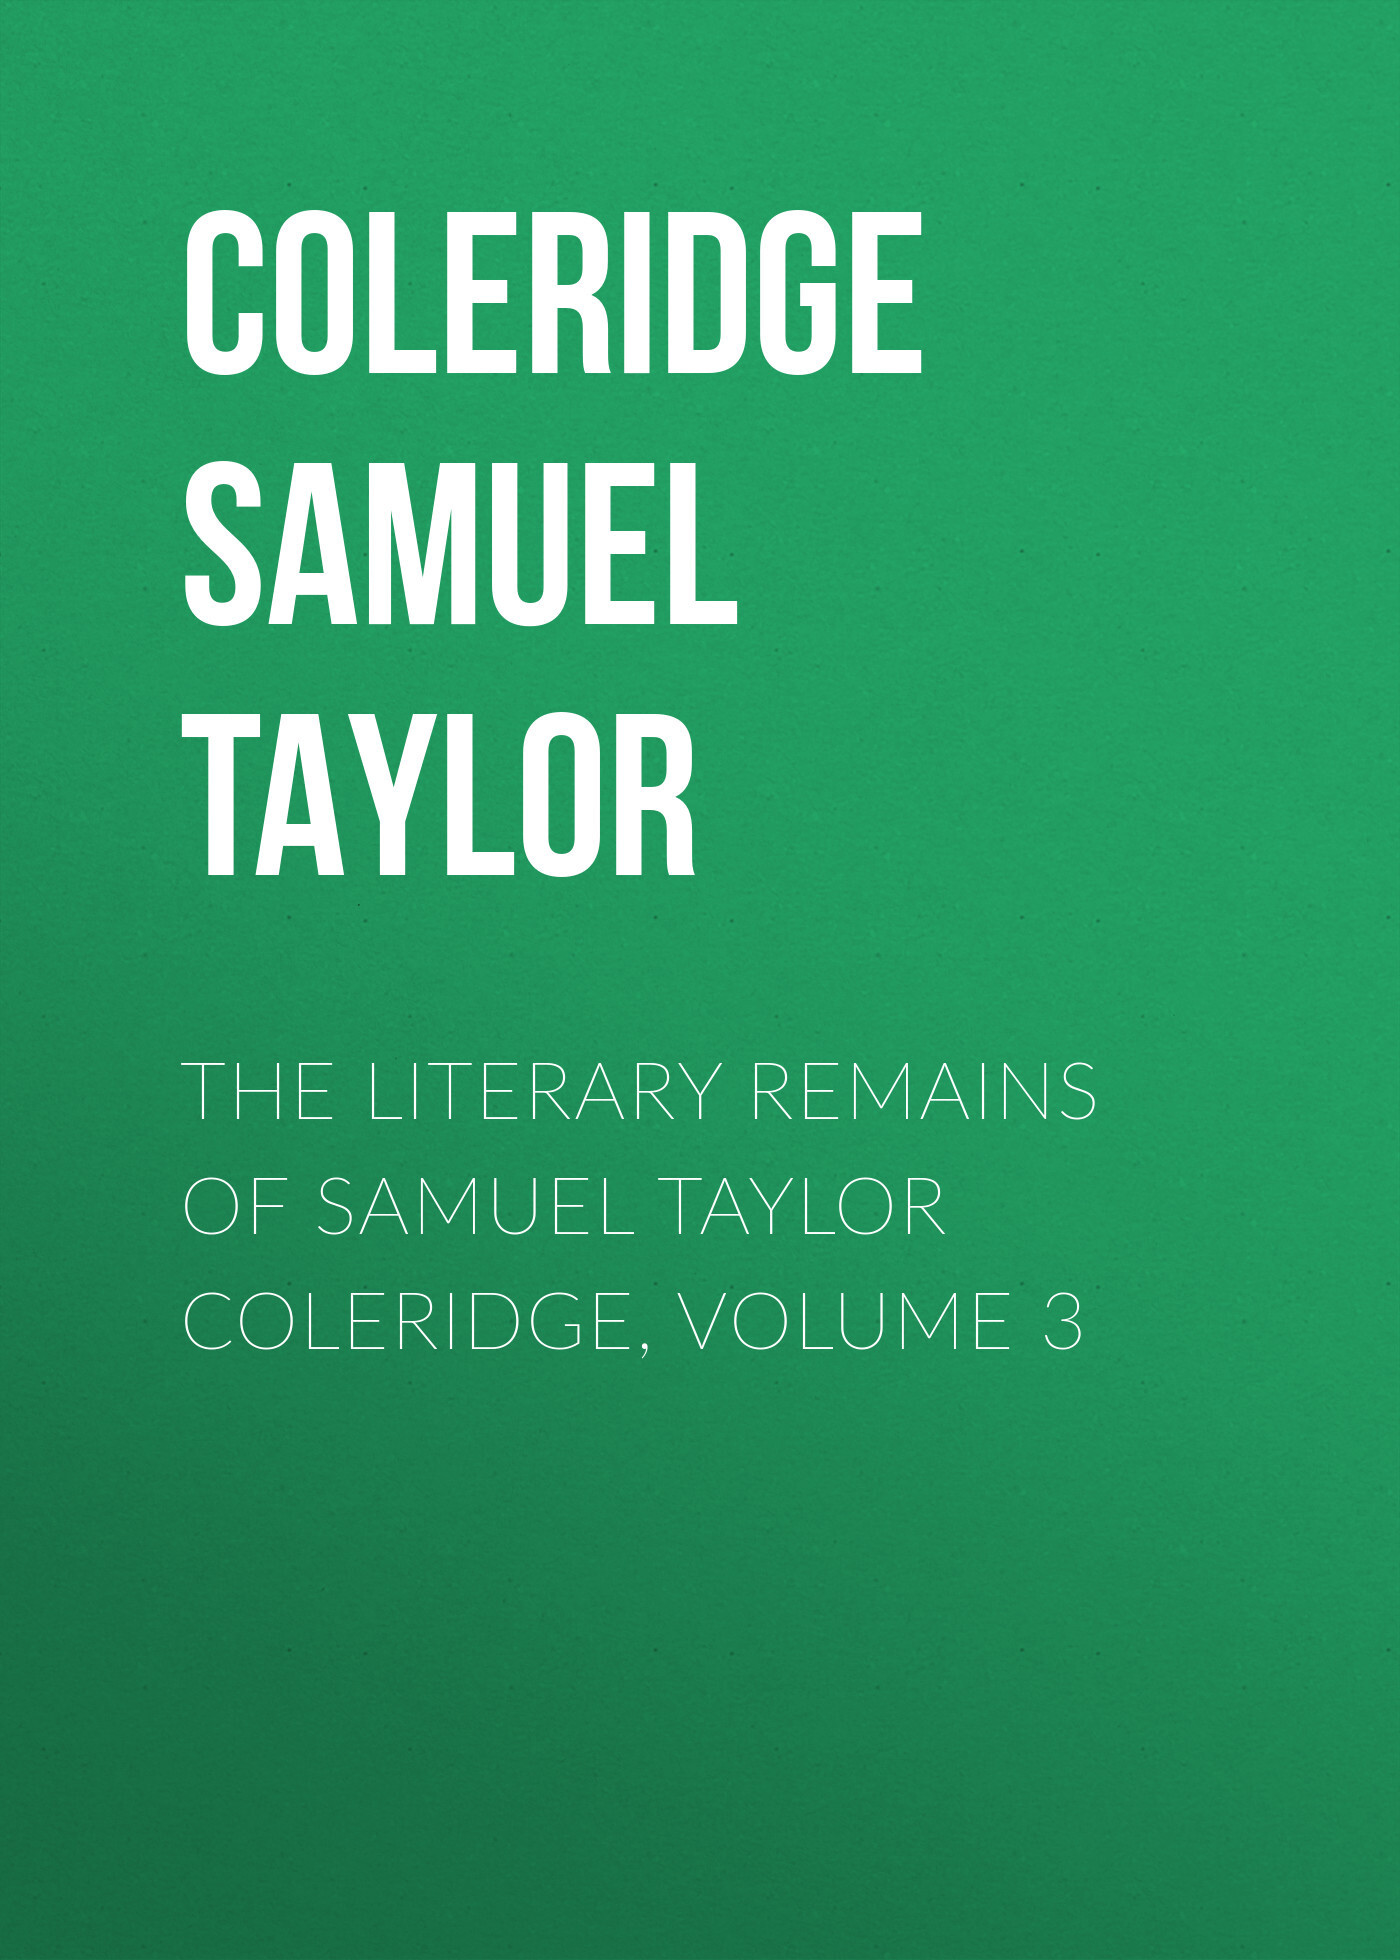 Книга The Literary Remains of Samuel Taylor Coleridge, Volume 3 из серии , созданная Samuel Coleridge, может относится к жанру Биографии и Мемуары, Критика, Языкознание, Зарубежная старинная литература. Стоимость электронной книги The Literary Remains of Samuel Taylor Coleridge, Volume 3 с идентификатором 34839710 составляет 0 руб.